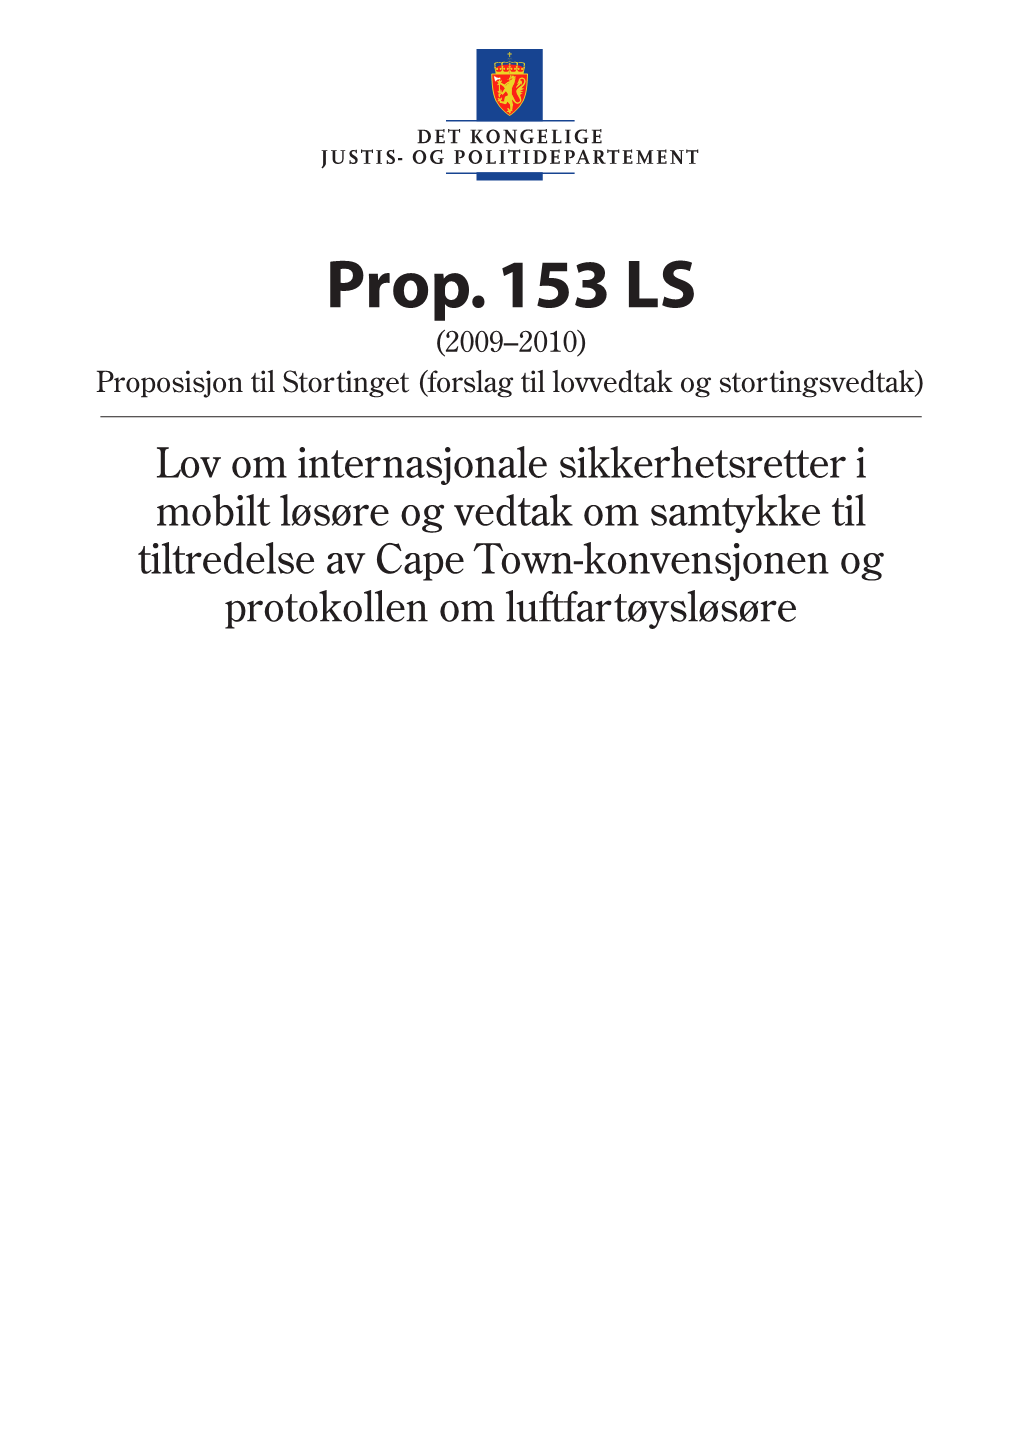 Prop. 153 LS (2009–2010) Proposisjon Til Stortinget (Forslag Til Lovvedtak Og Stortingsvedtak)